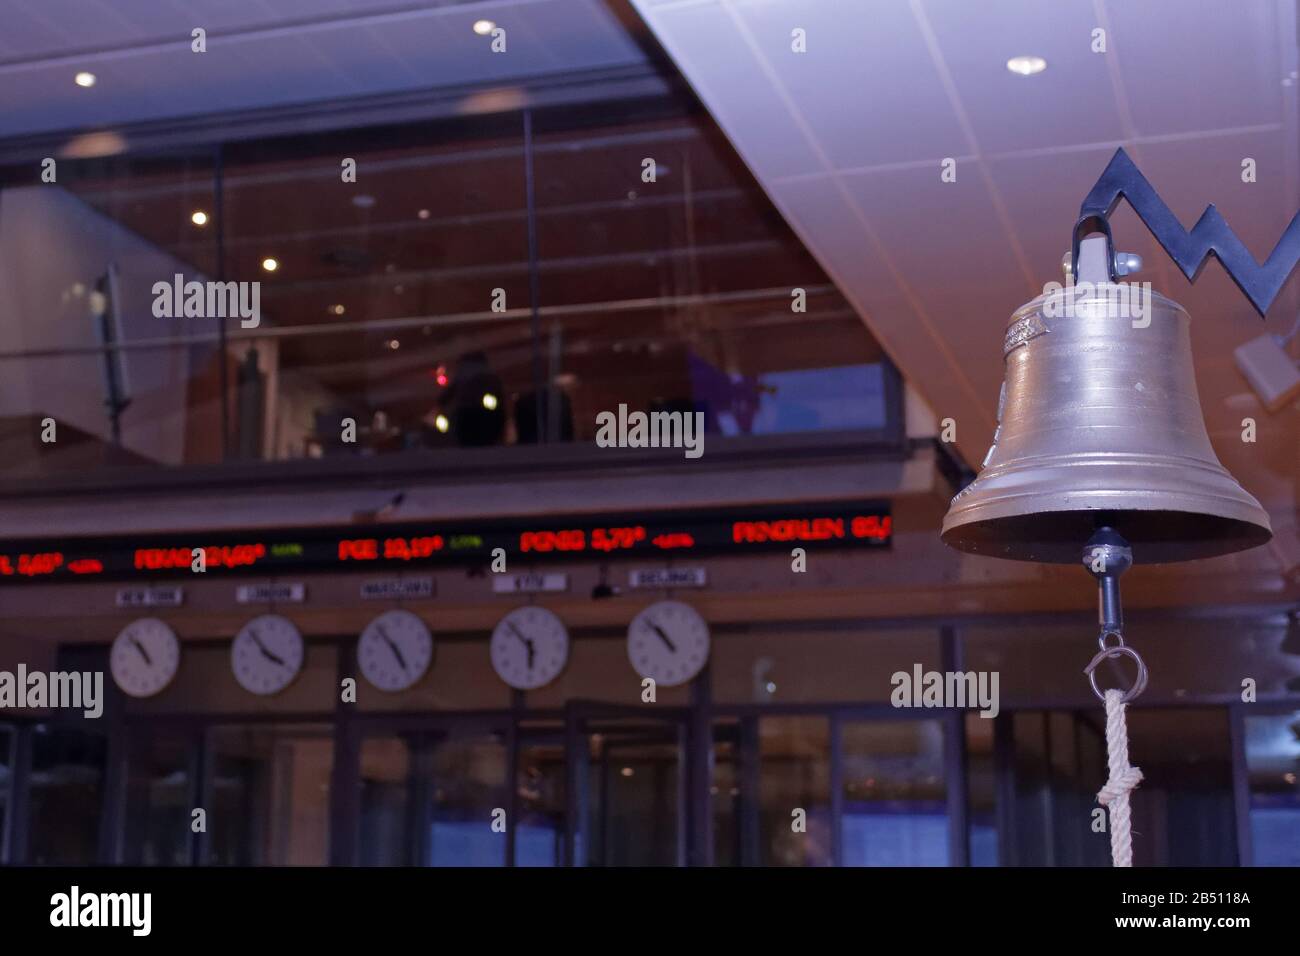 VARSAVIA/POLONIA - 27 marzo 2018: Visualizza quotazioni digitali, orologi e campane nella stanza di negoziazione della Borsa di Varsavia (WSE, GPW) Foto Stock